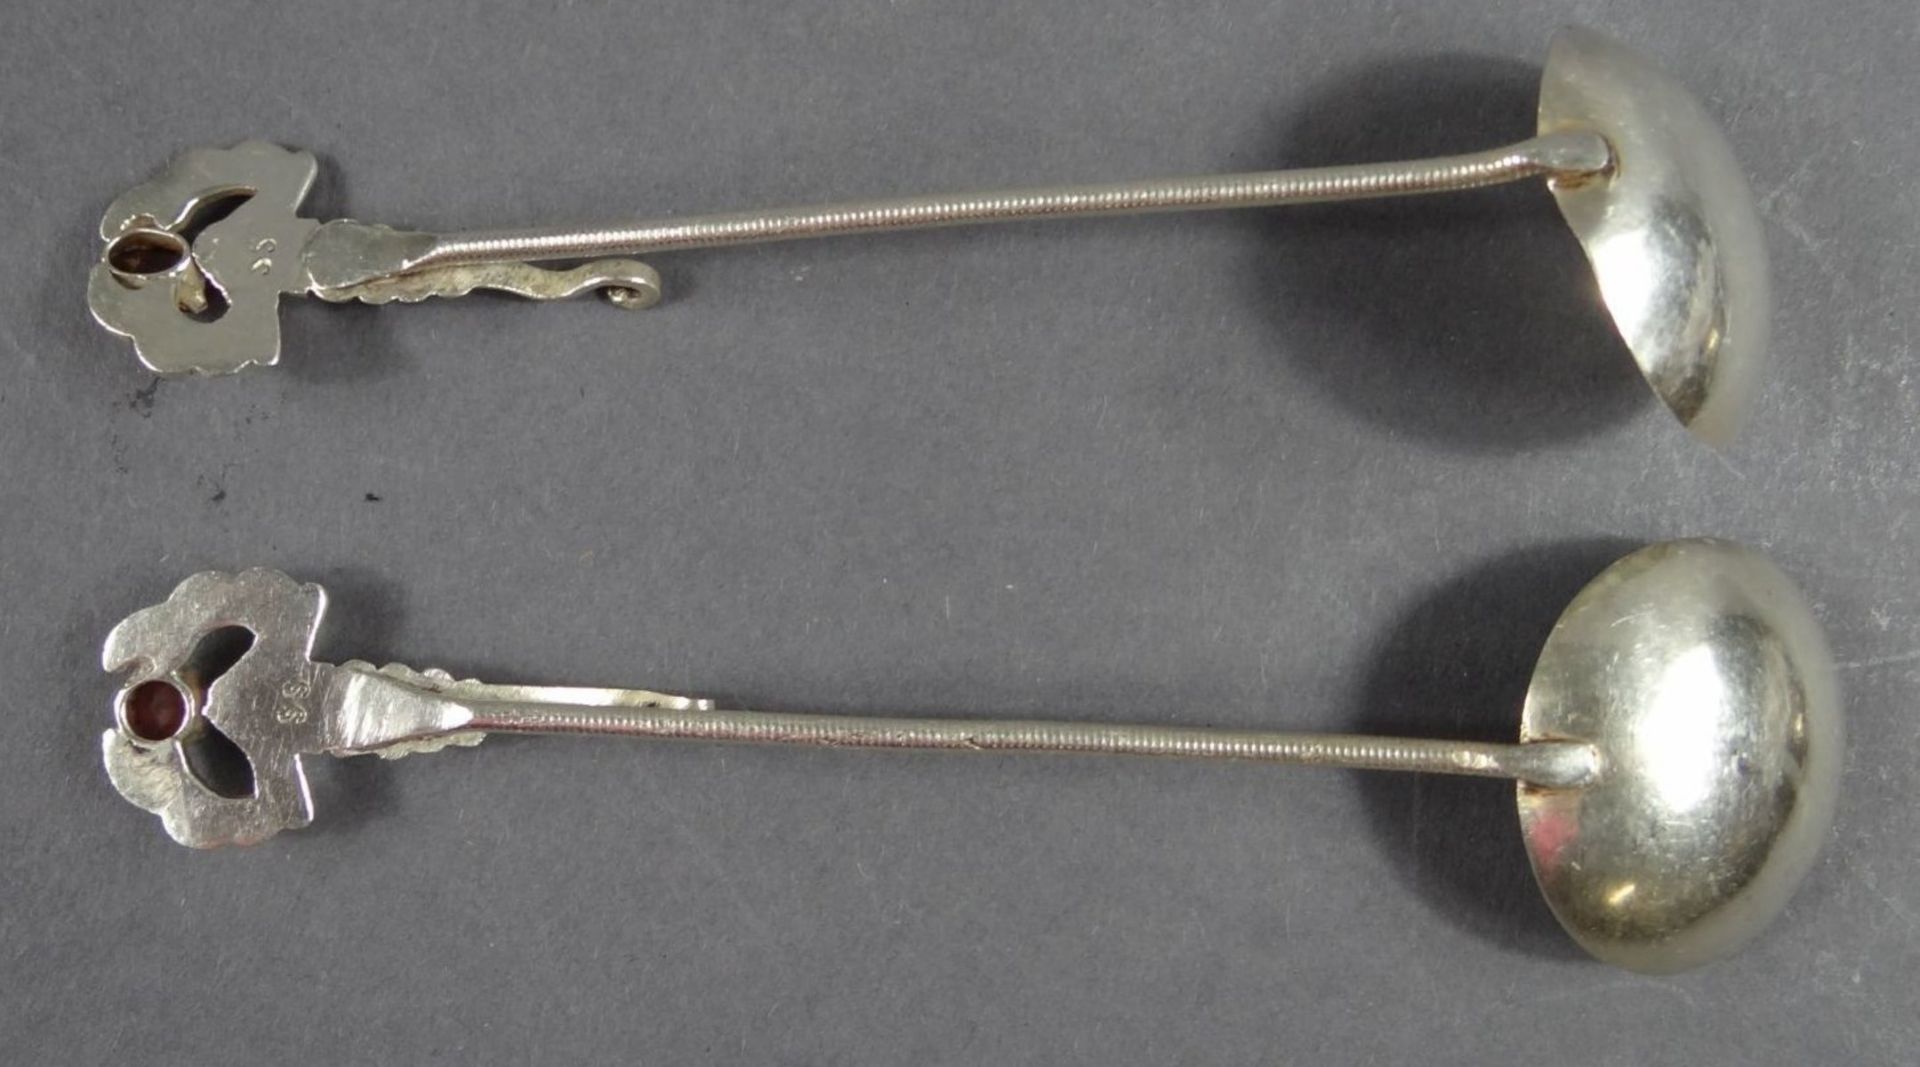 2 kl. Silber-Löffel zum Einhängen,Stielende mit Haken und Hummer, roter Stein, L-13 cm, zus. 28 gr. - Bild 3 aus 6